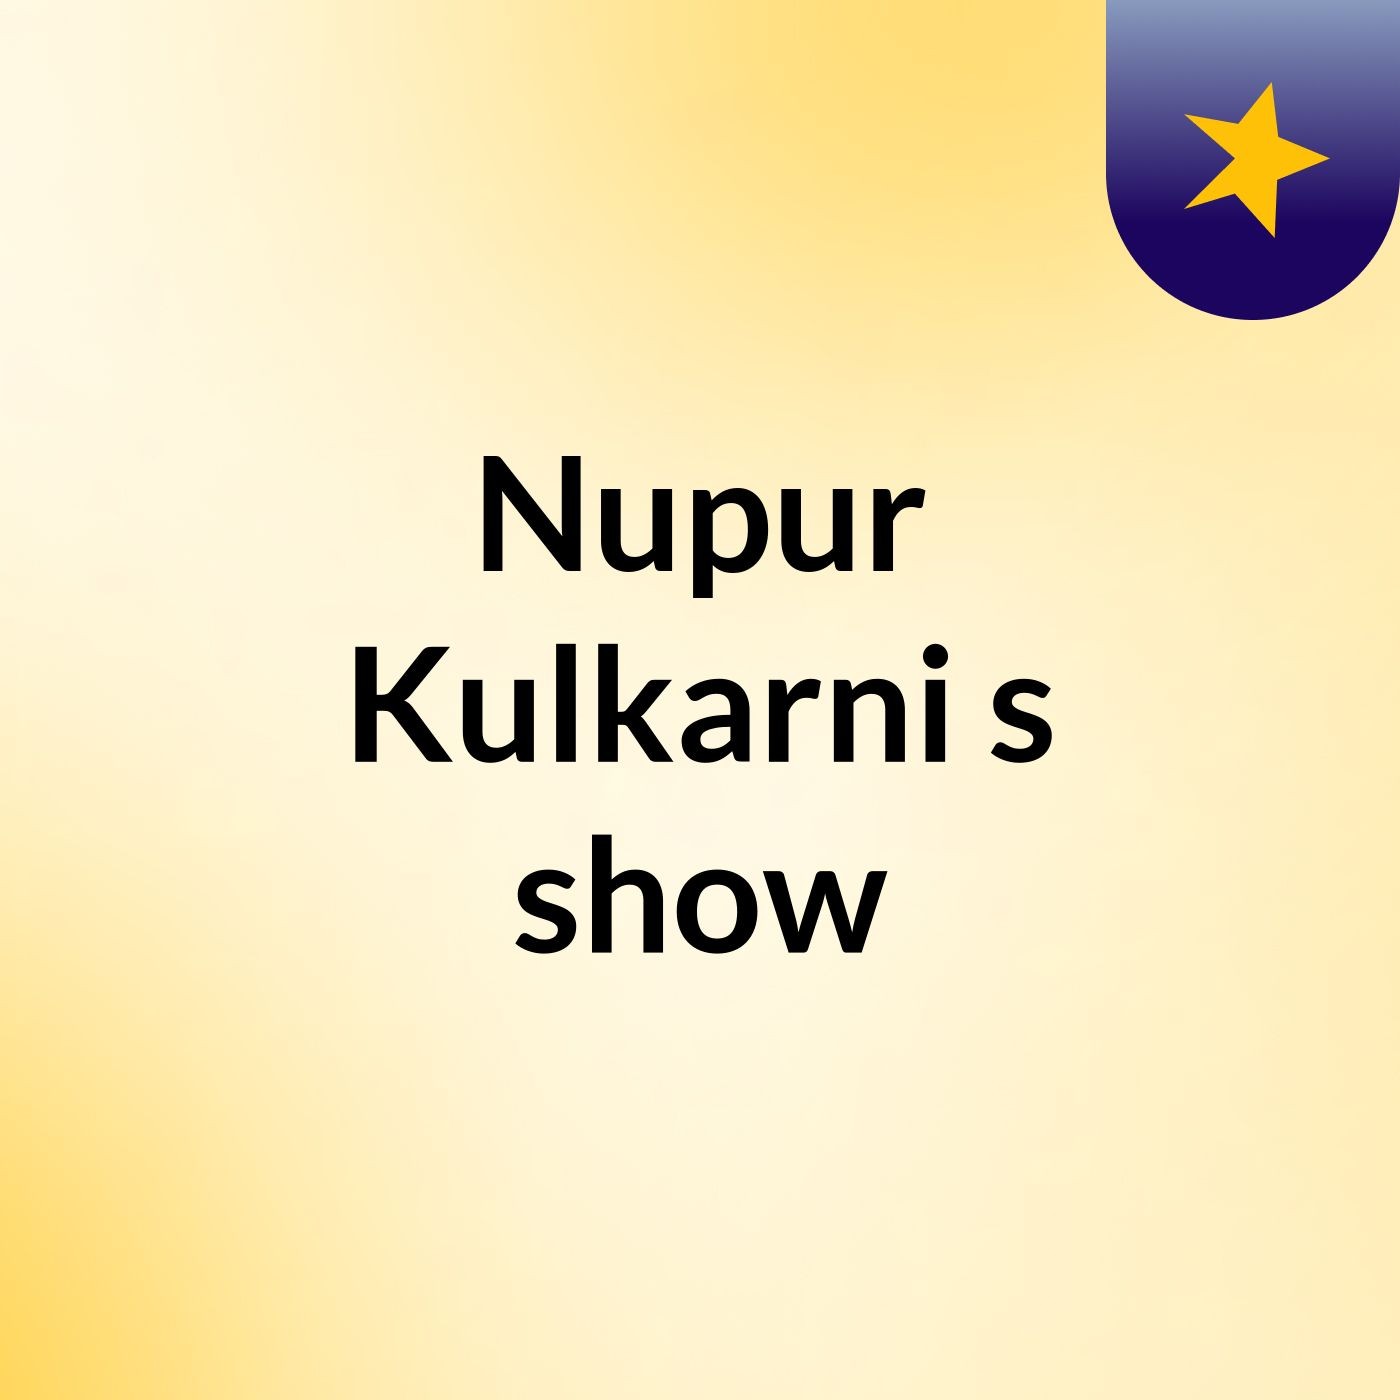 Nupur Kulkarni's show